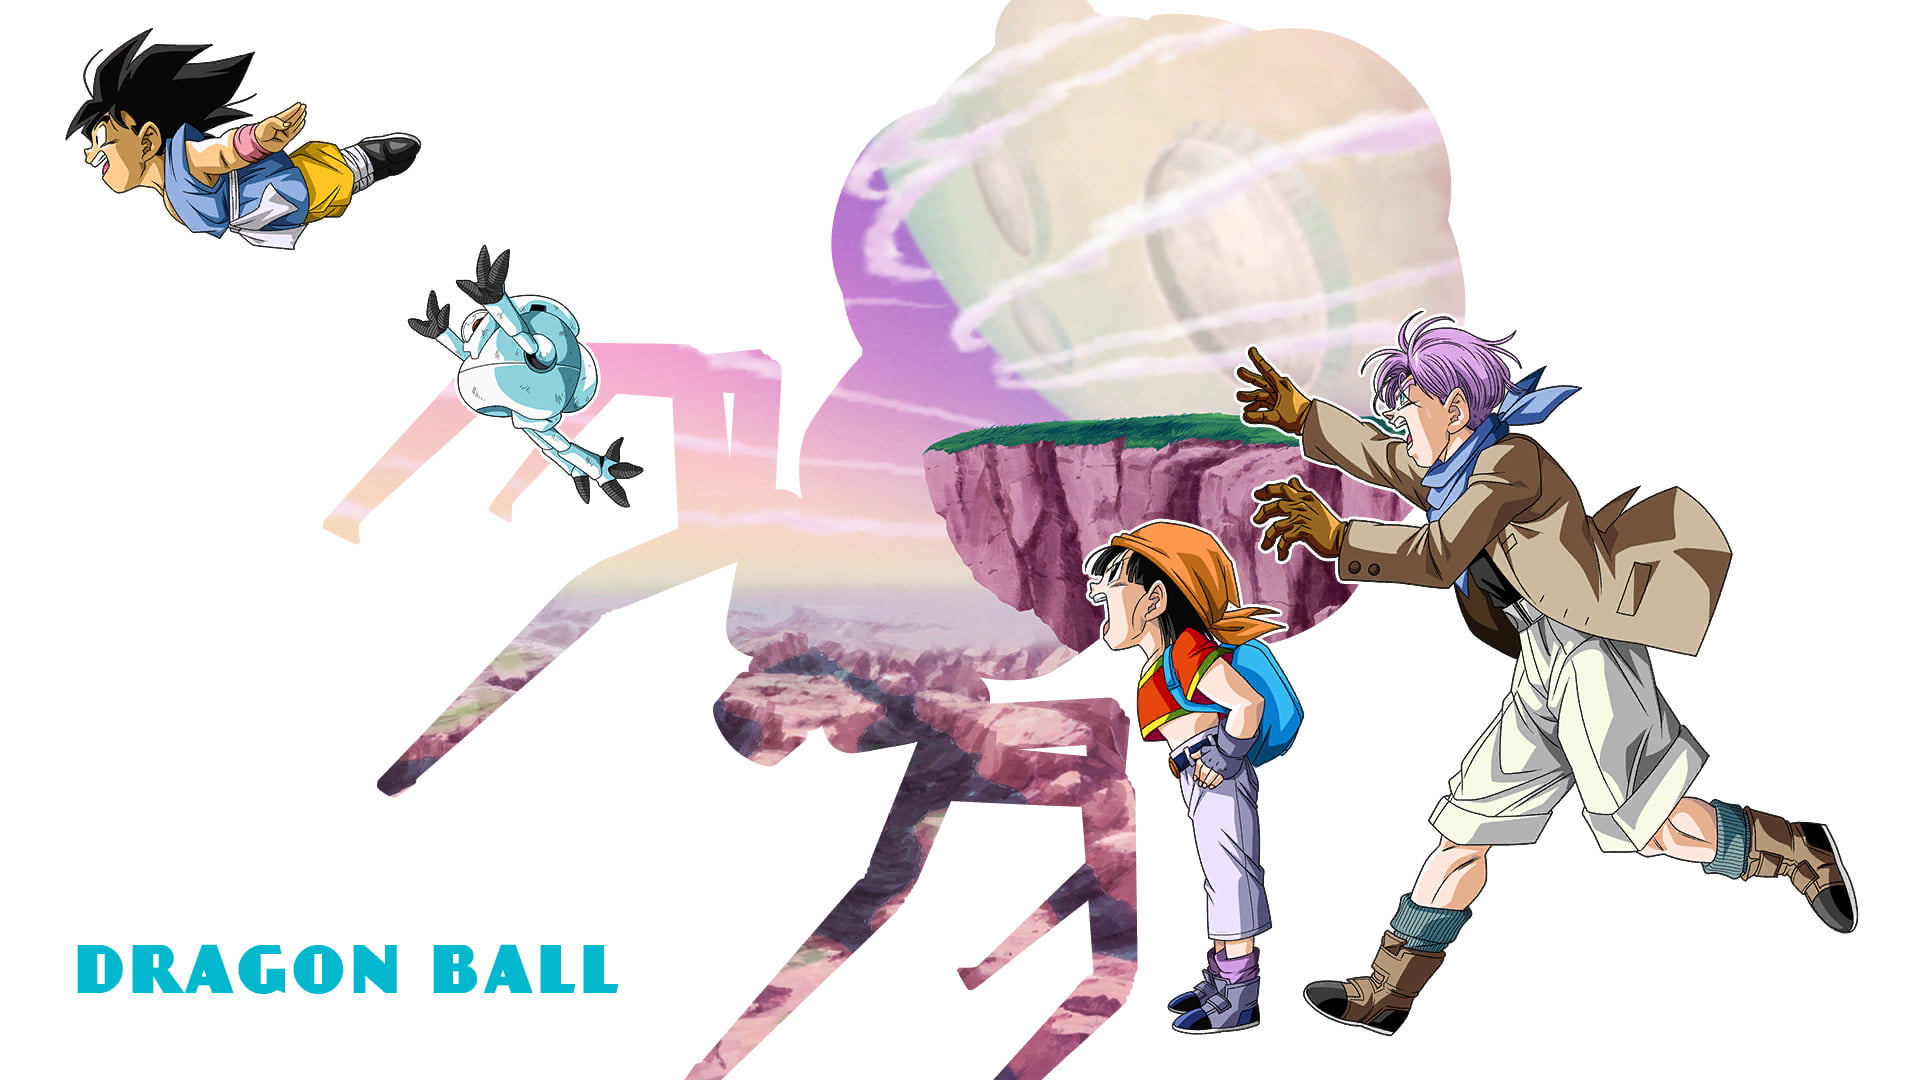 Dragon Ball, Dragon Ball GT, Kid Goku, Pan, Trunks (character)